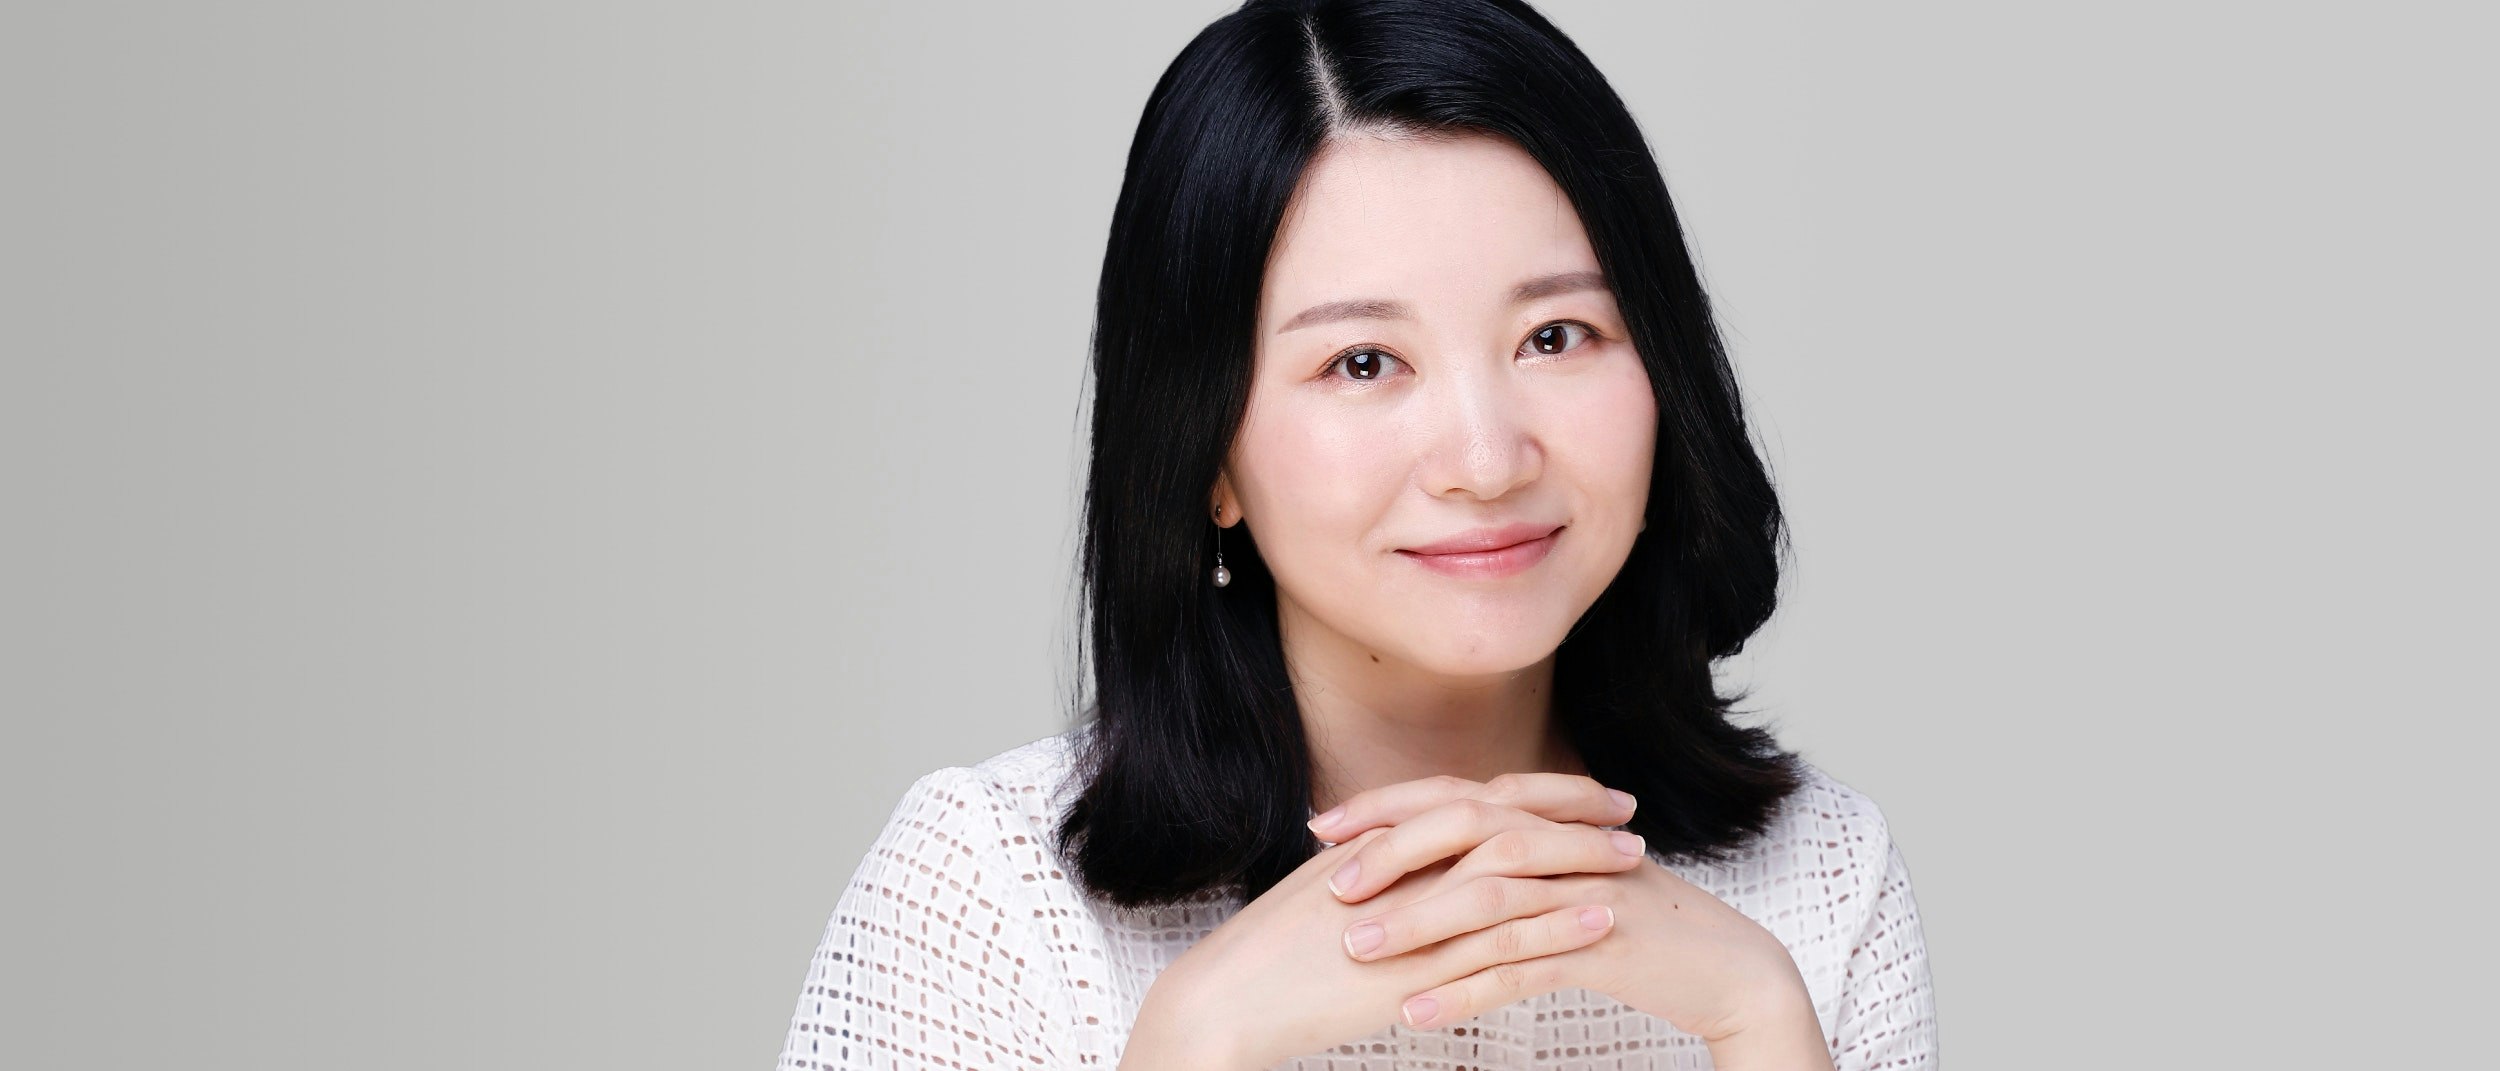 Vision Fund team member Cecilia Chen's profile photo